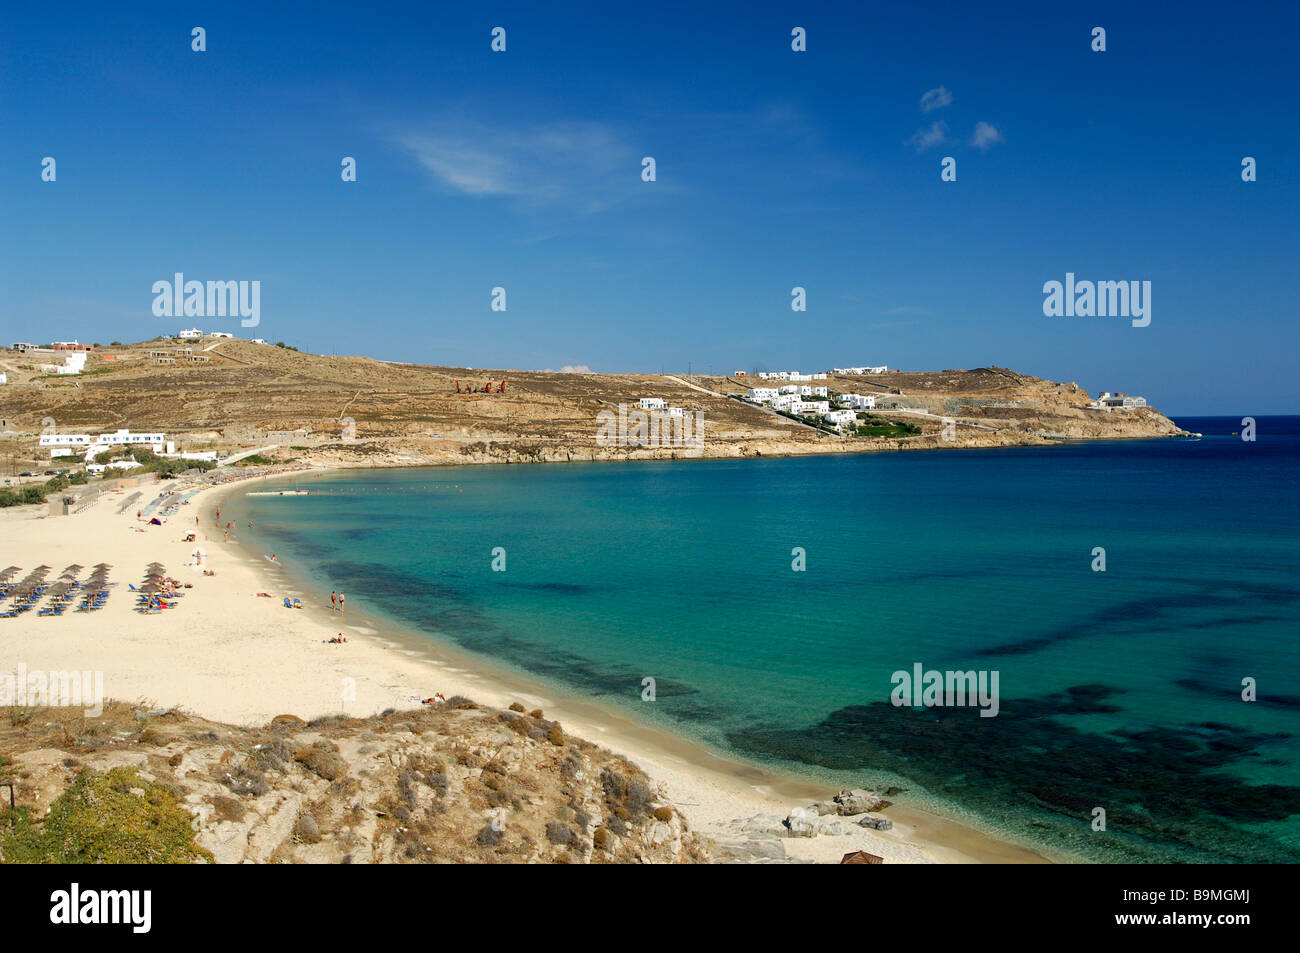 Greece, The Cyclades, Mykonos island, Kalo Livadi beach Stock Photo - Alamy